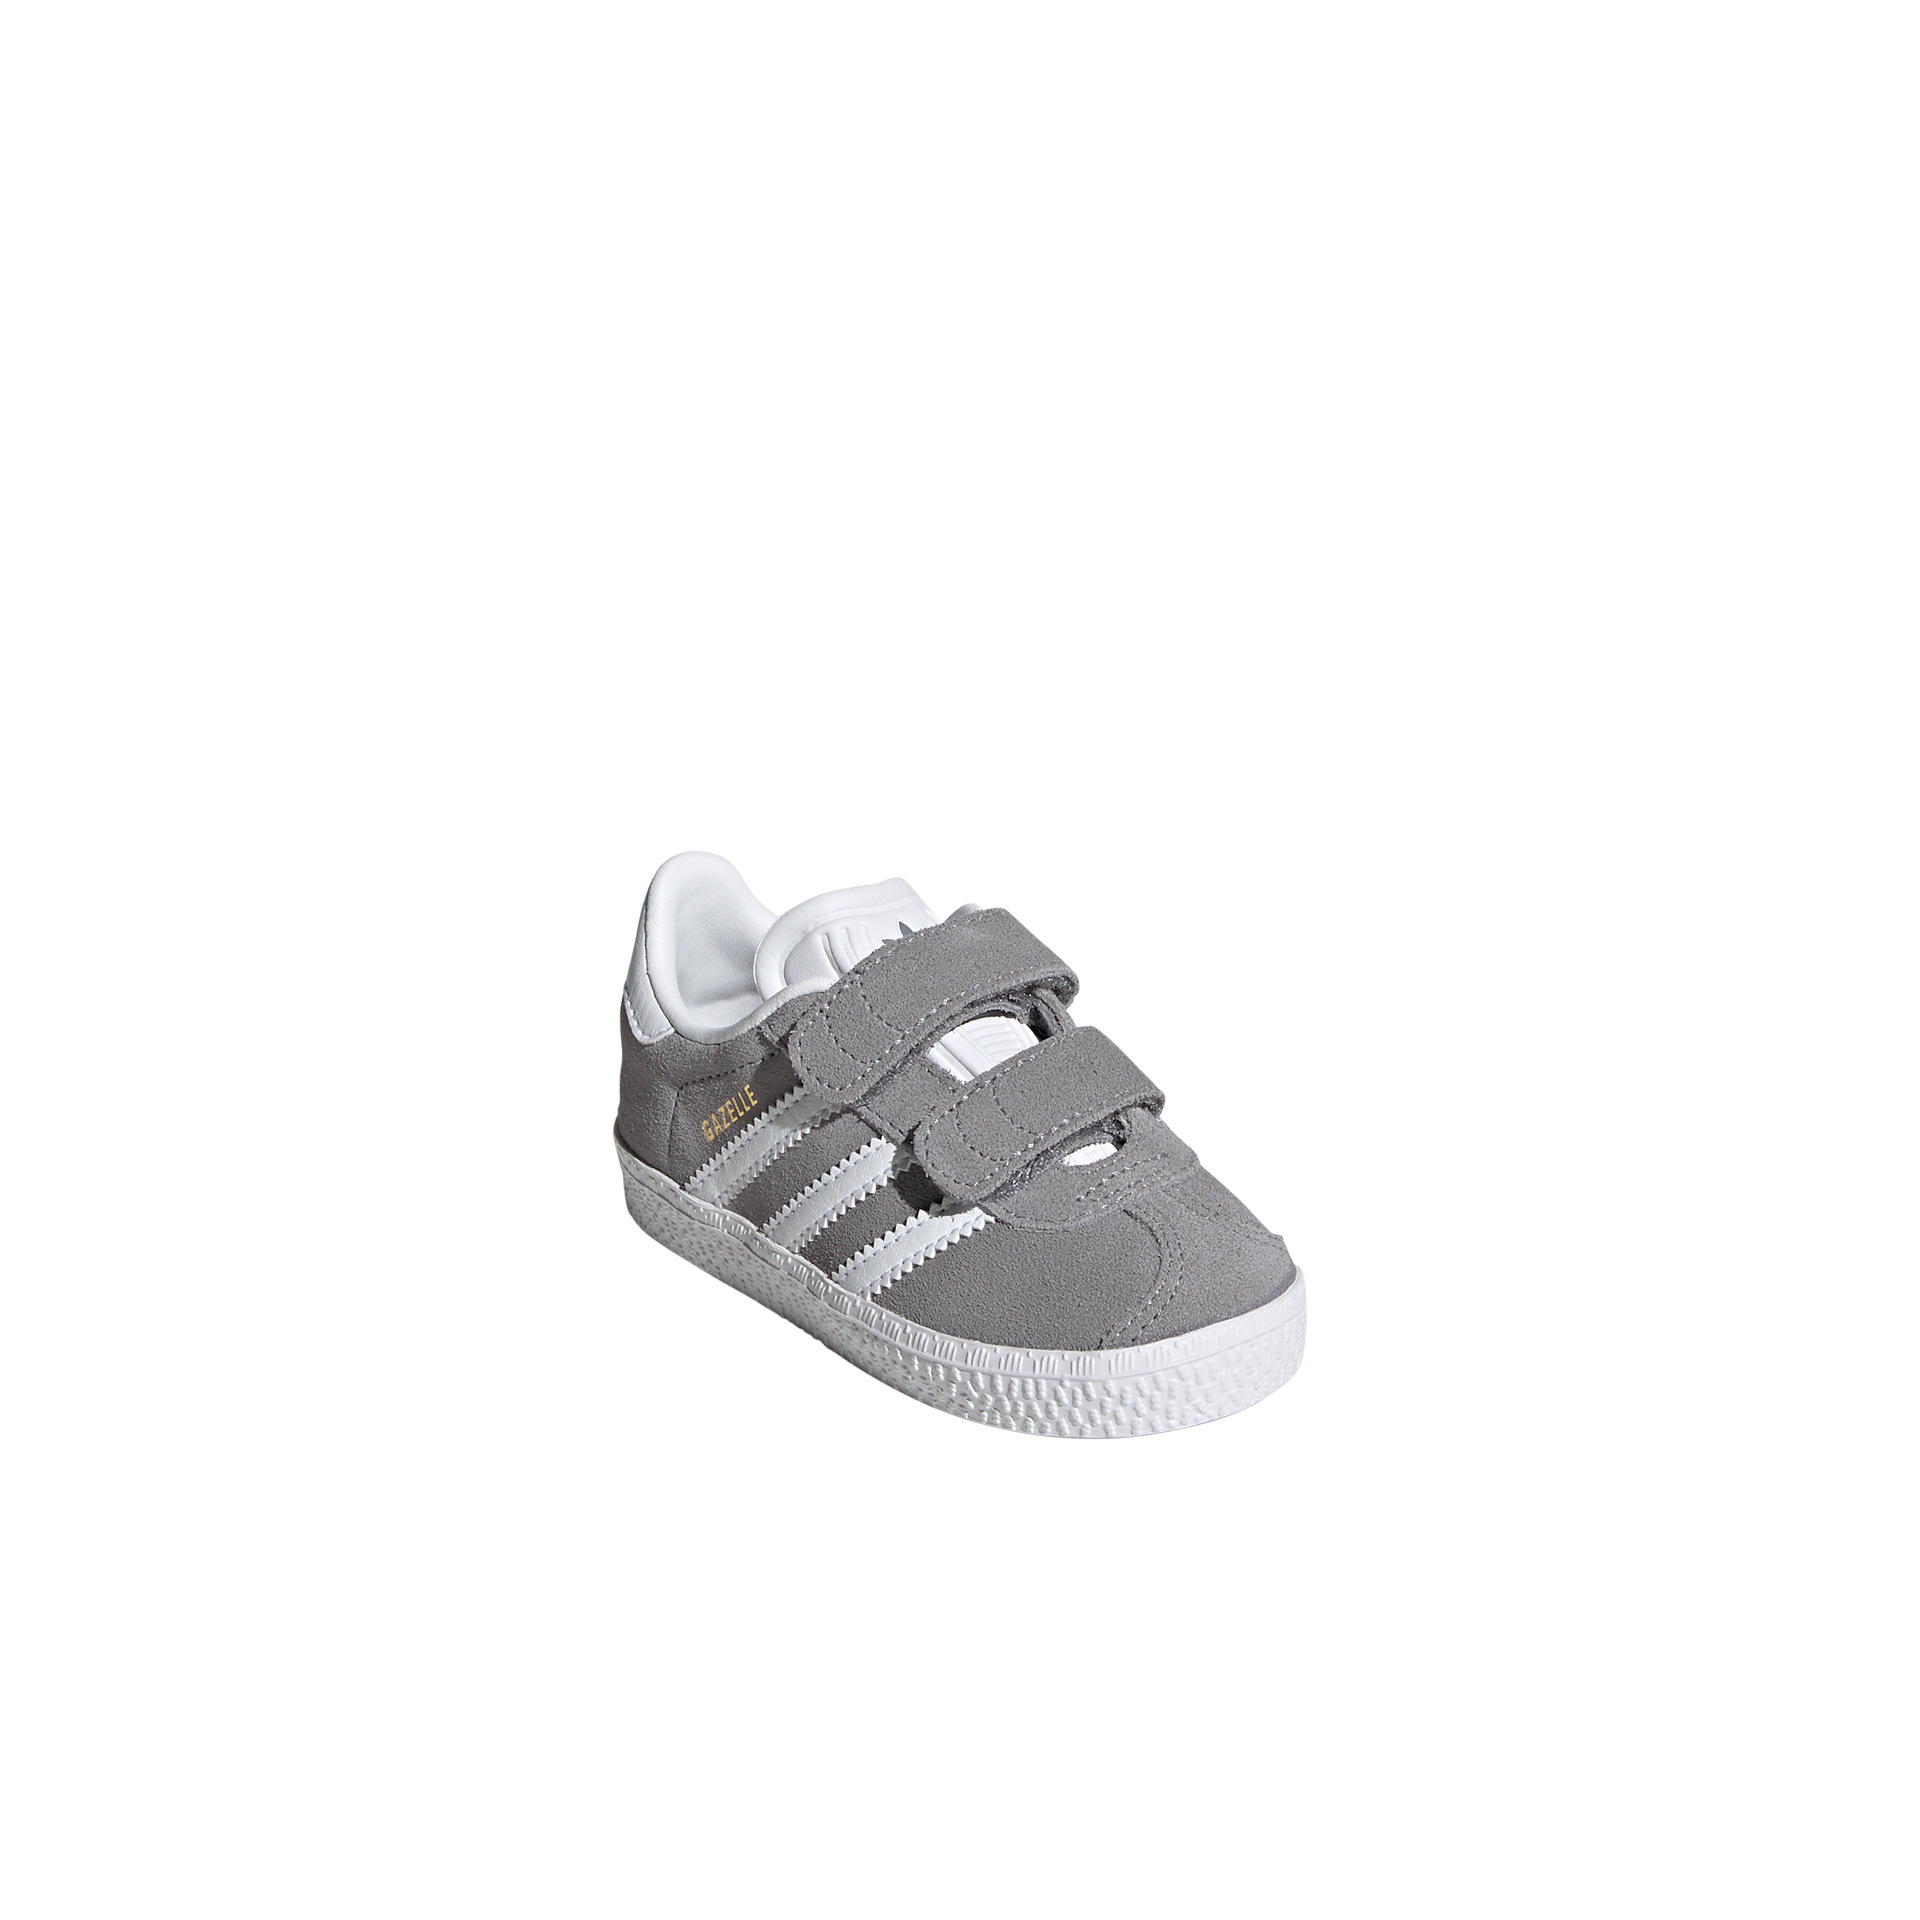 adidas Gazelle Cf I gris zapatillas bebé tallas 16-27